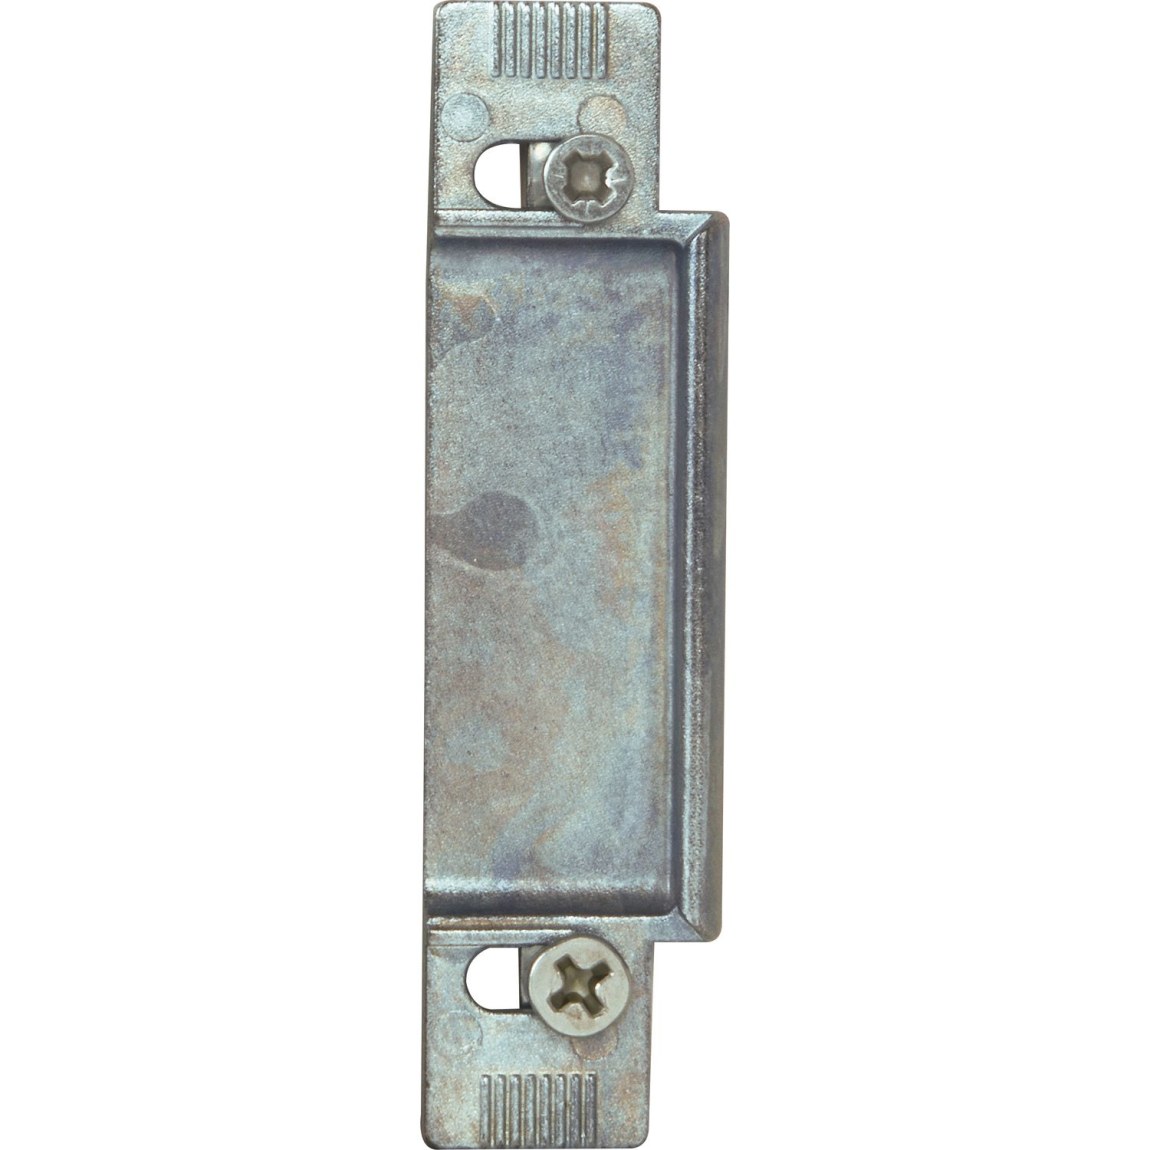 KFV výměnný kus 116, zinkový tlakový odlitek stříbrný, 6 mm - Zámky Lištové - vícebodové zámky Zámky lištové KFV Protiplechy pro zámky KFV